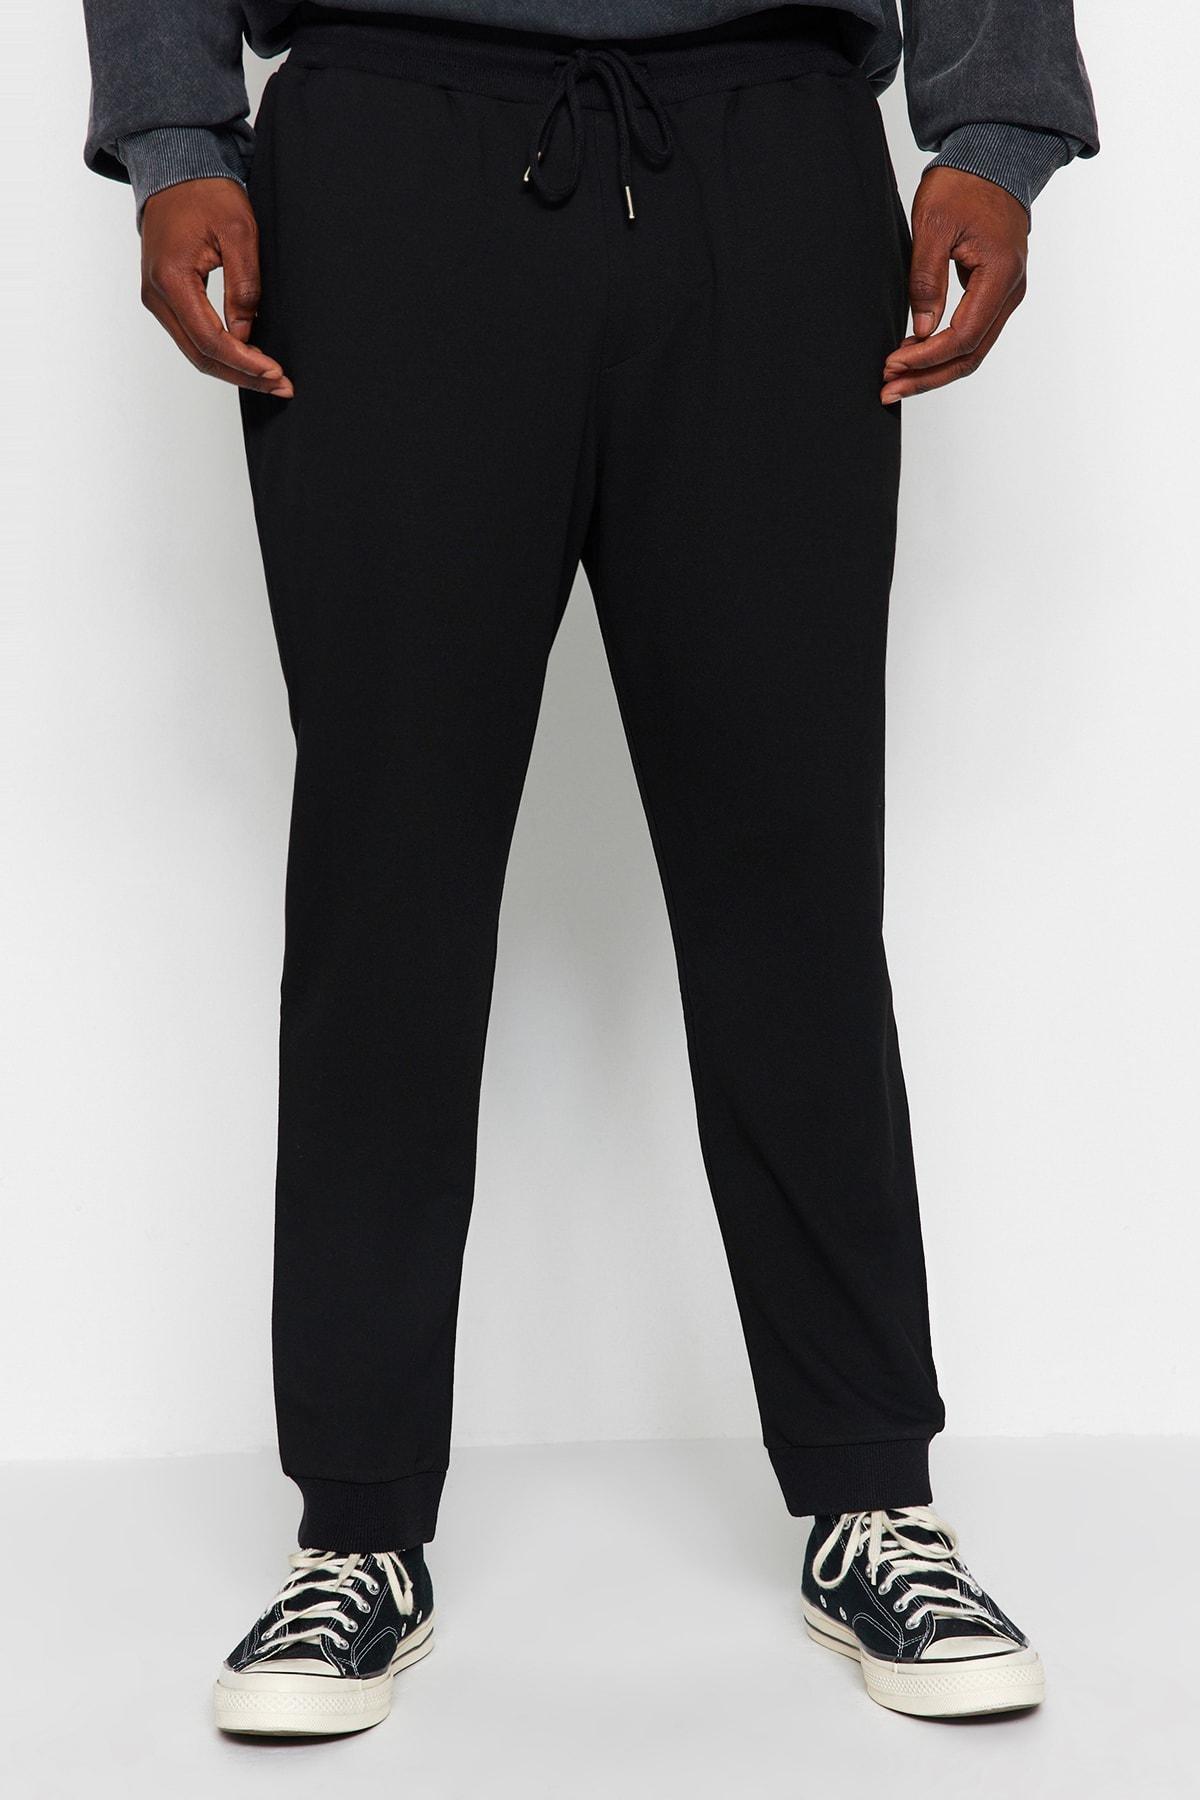 Trendyol - Black Plus Size Cut Sweatpants.<br><br><br>